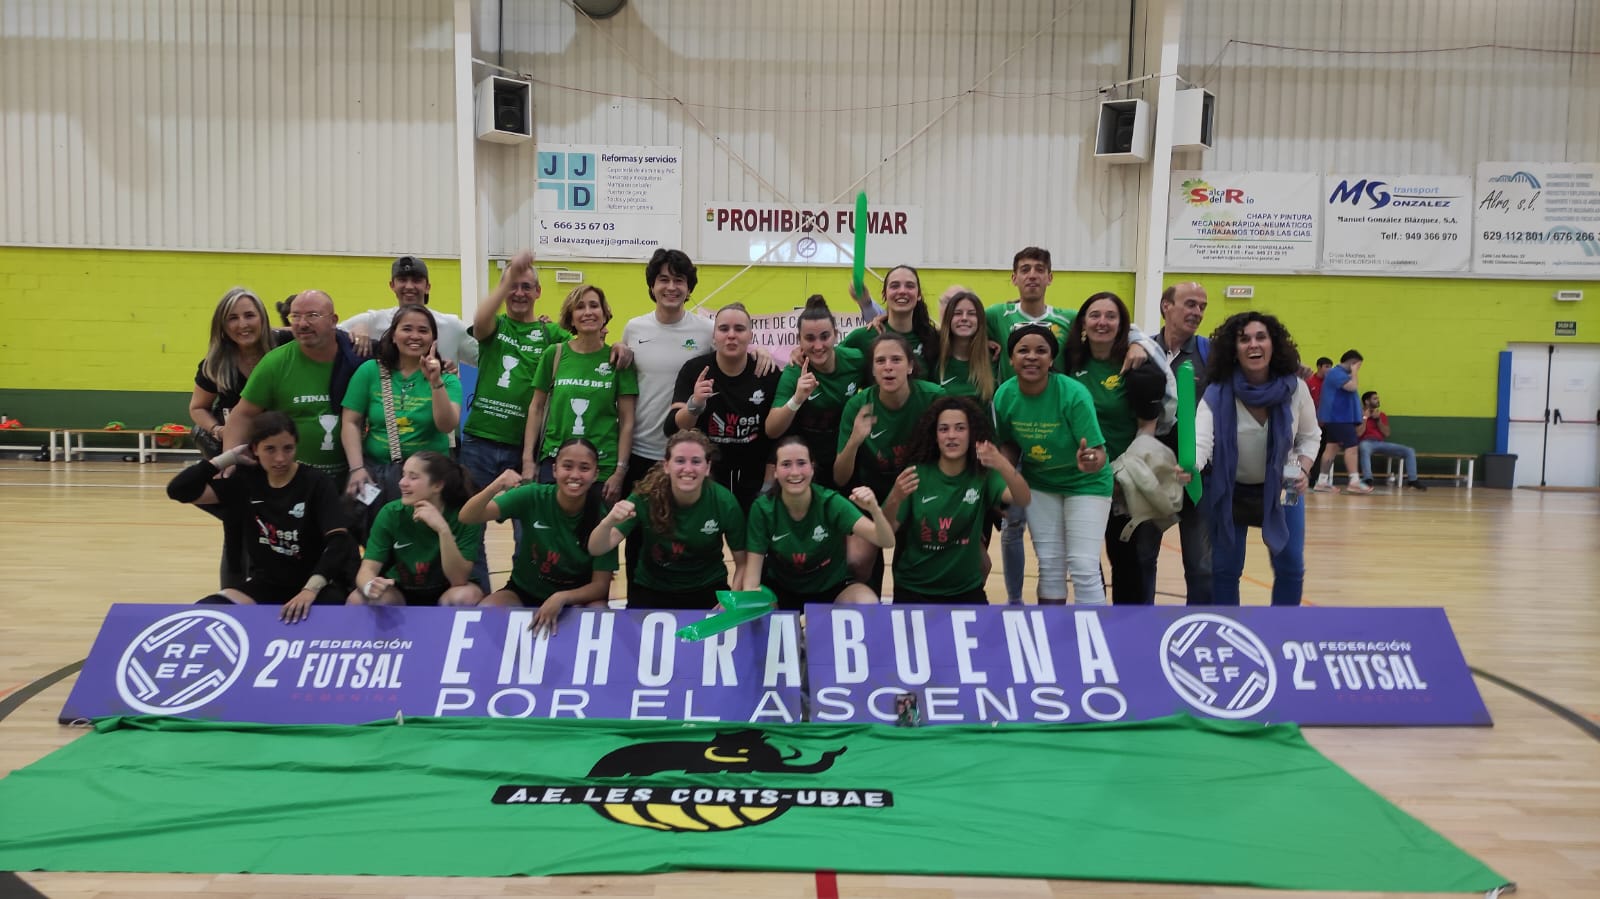 AE Les Corts-UBAE nuevo equipo de 1ª División de Fútbol Sala Femenino. Foto: AE Les Corts-UBAE